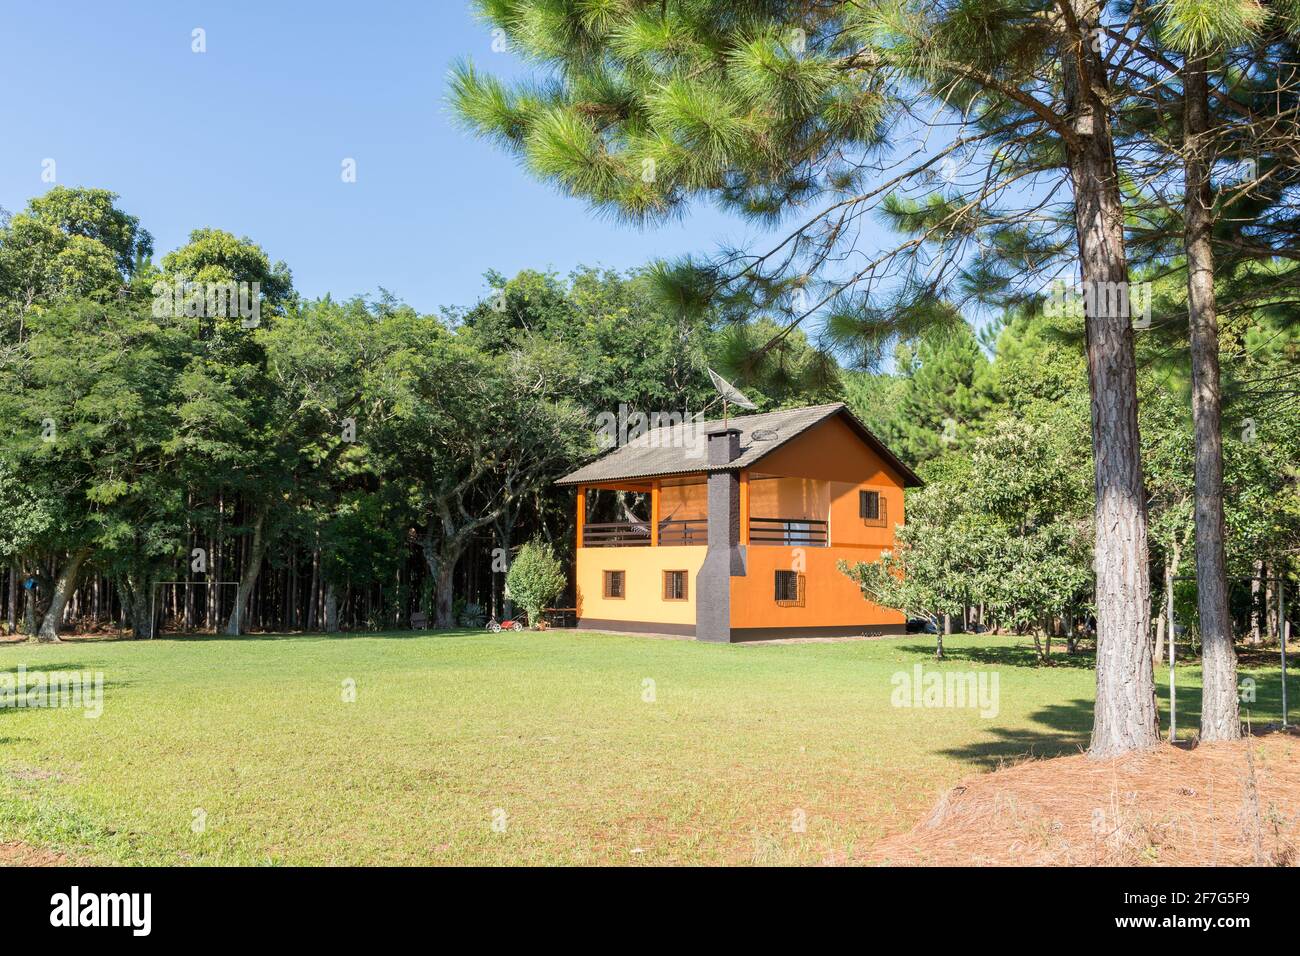 Petite maison orange dans les bois Banque D'Images